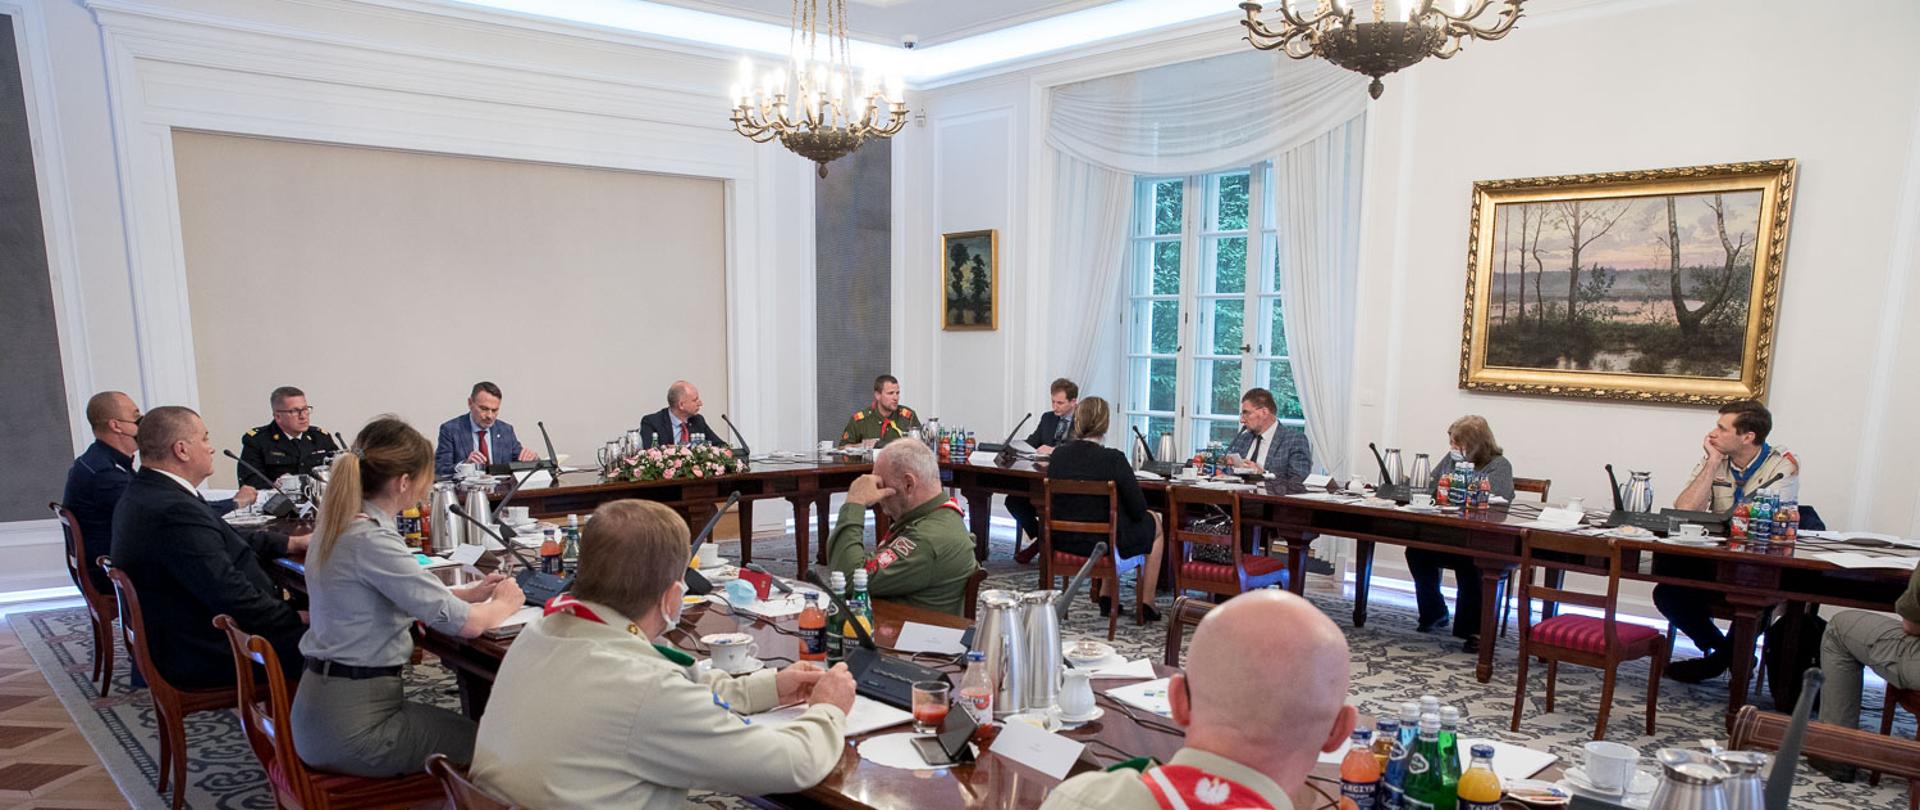 Uczestnicy spotkania m. in. harcerze, przedstawiciele służb siedzą w sali Belwederu przy stołach